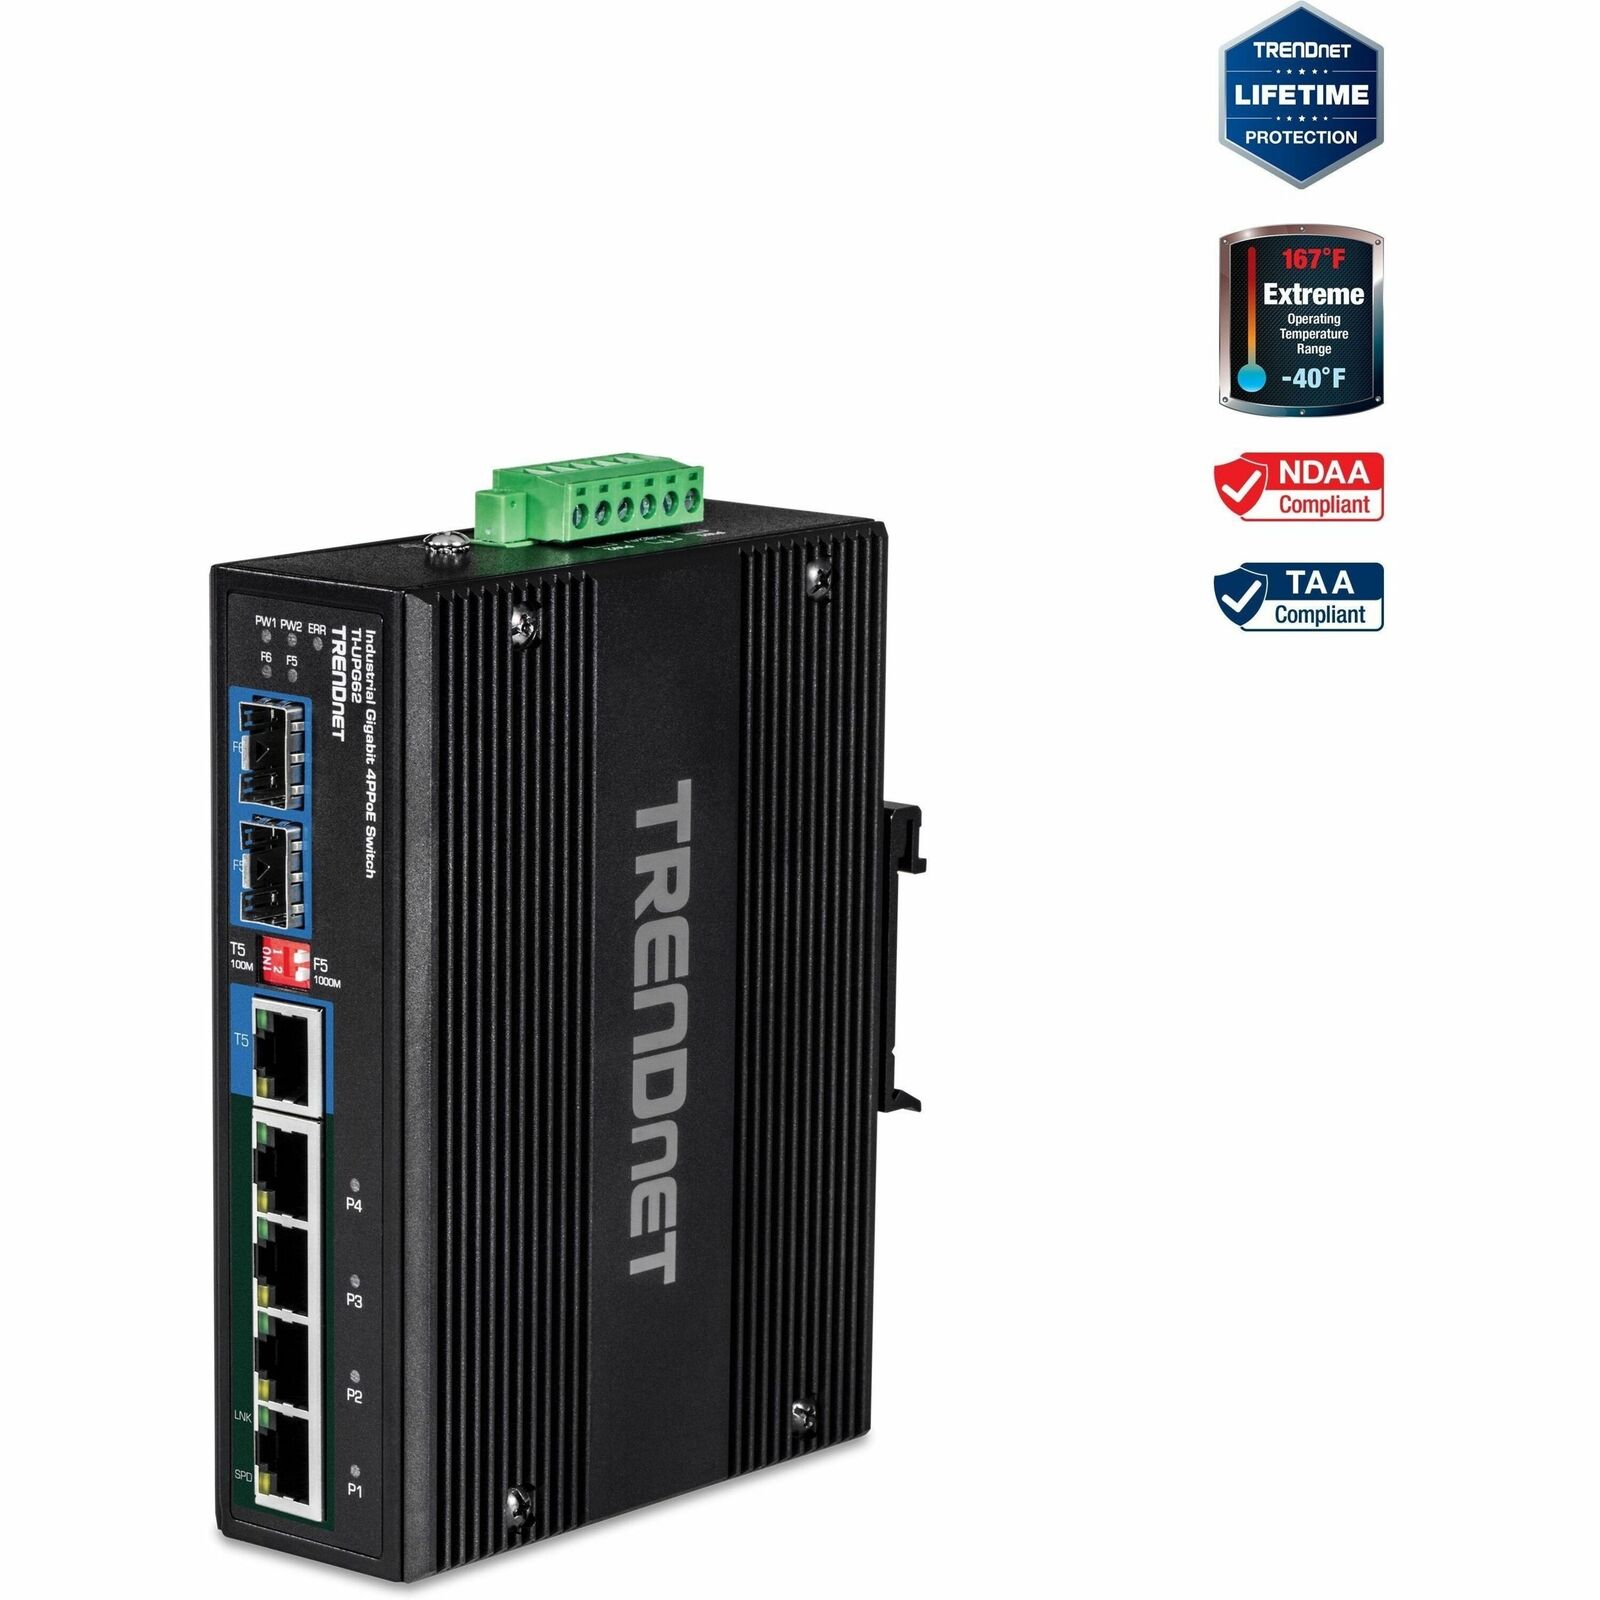 TRENDnet TI-UPG62, 6-Port Hardened Industrial Gigabit PoE++ DIN-Rail Network